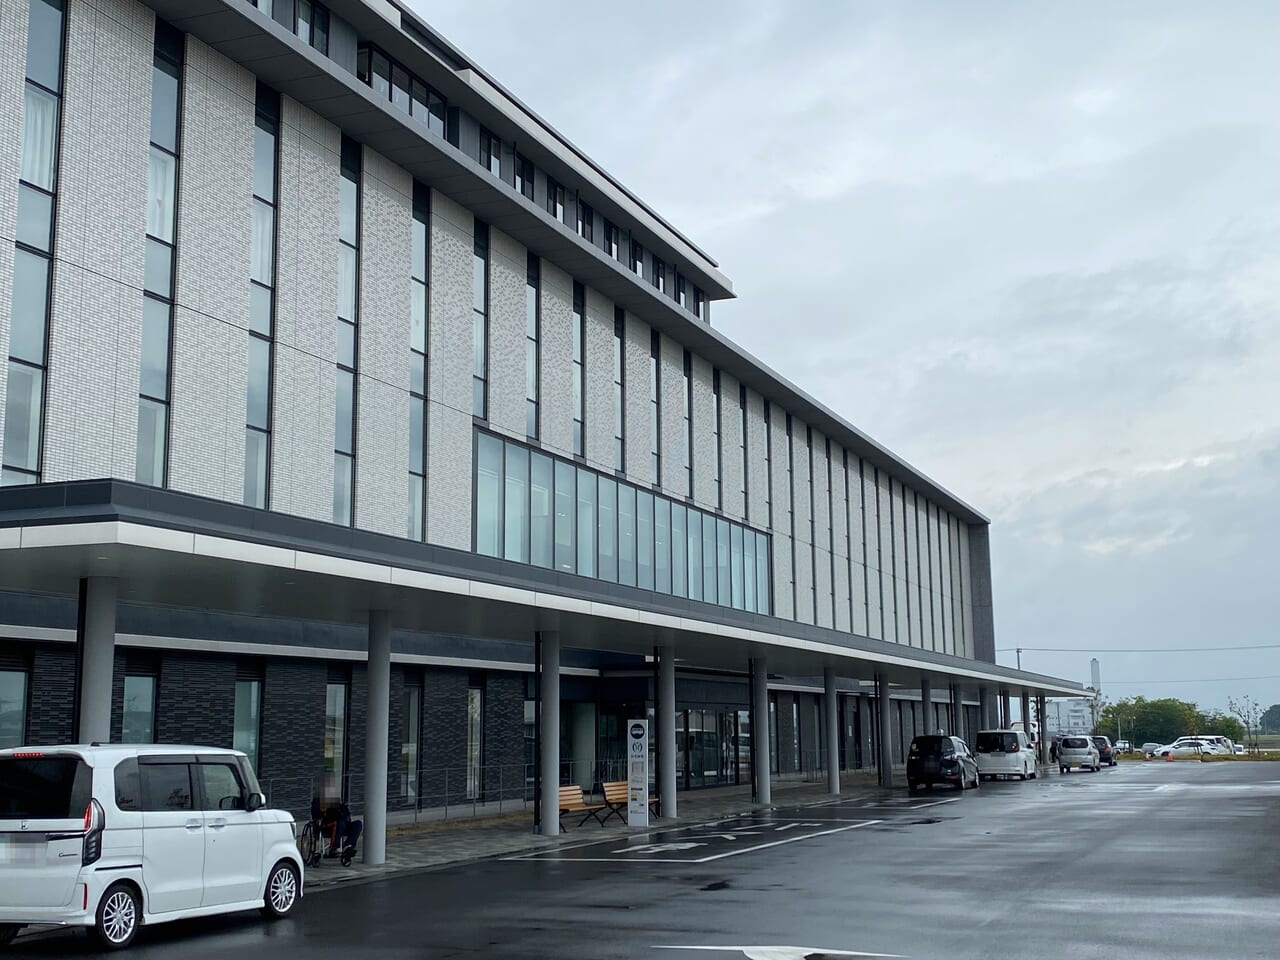 埼玉県済生会加須病院の建物正面